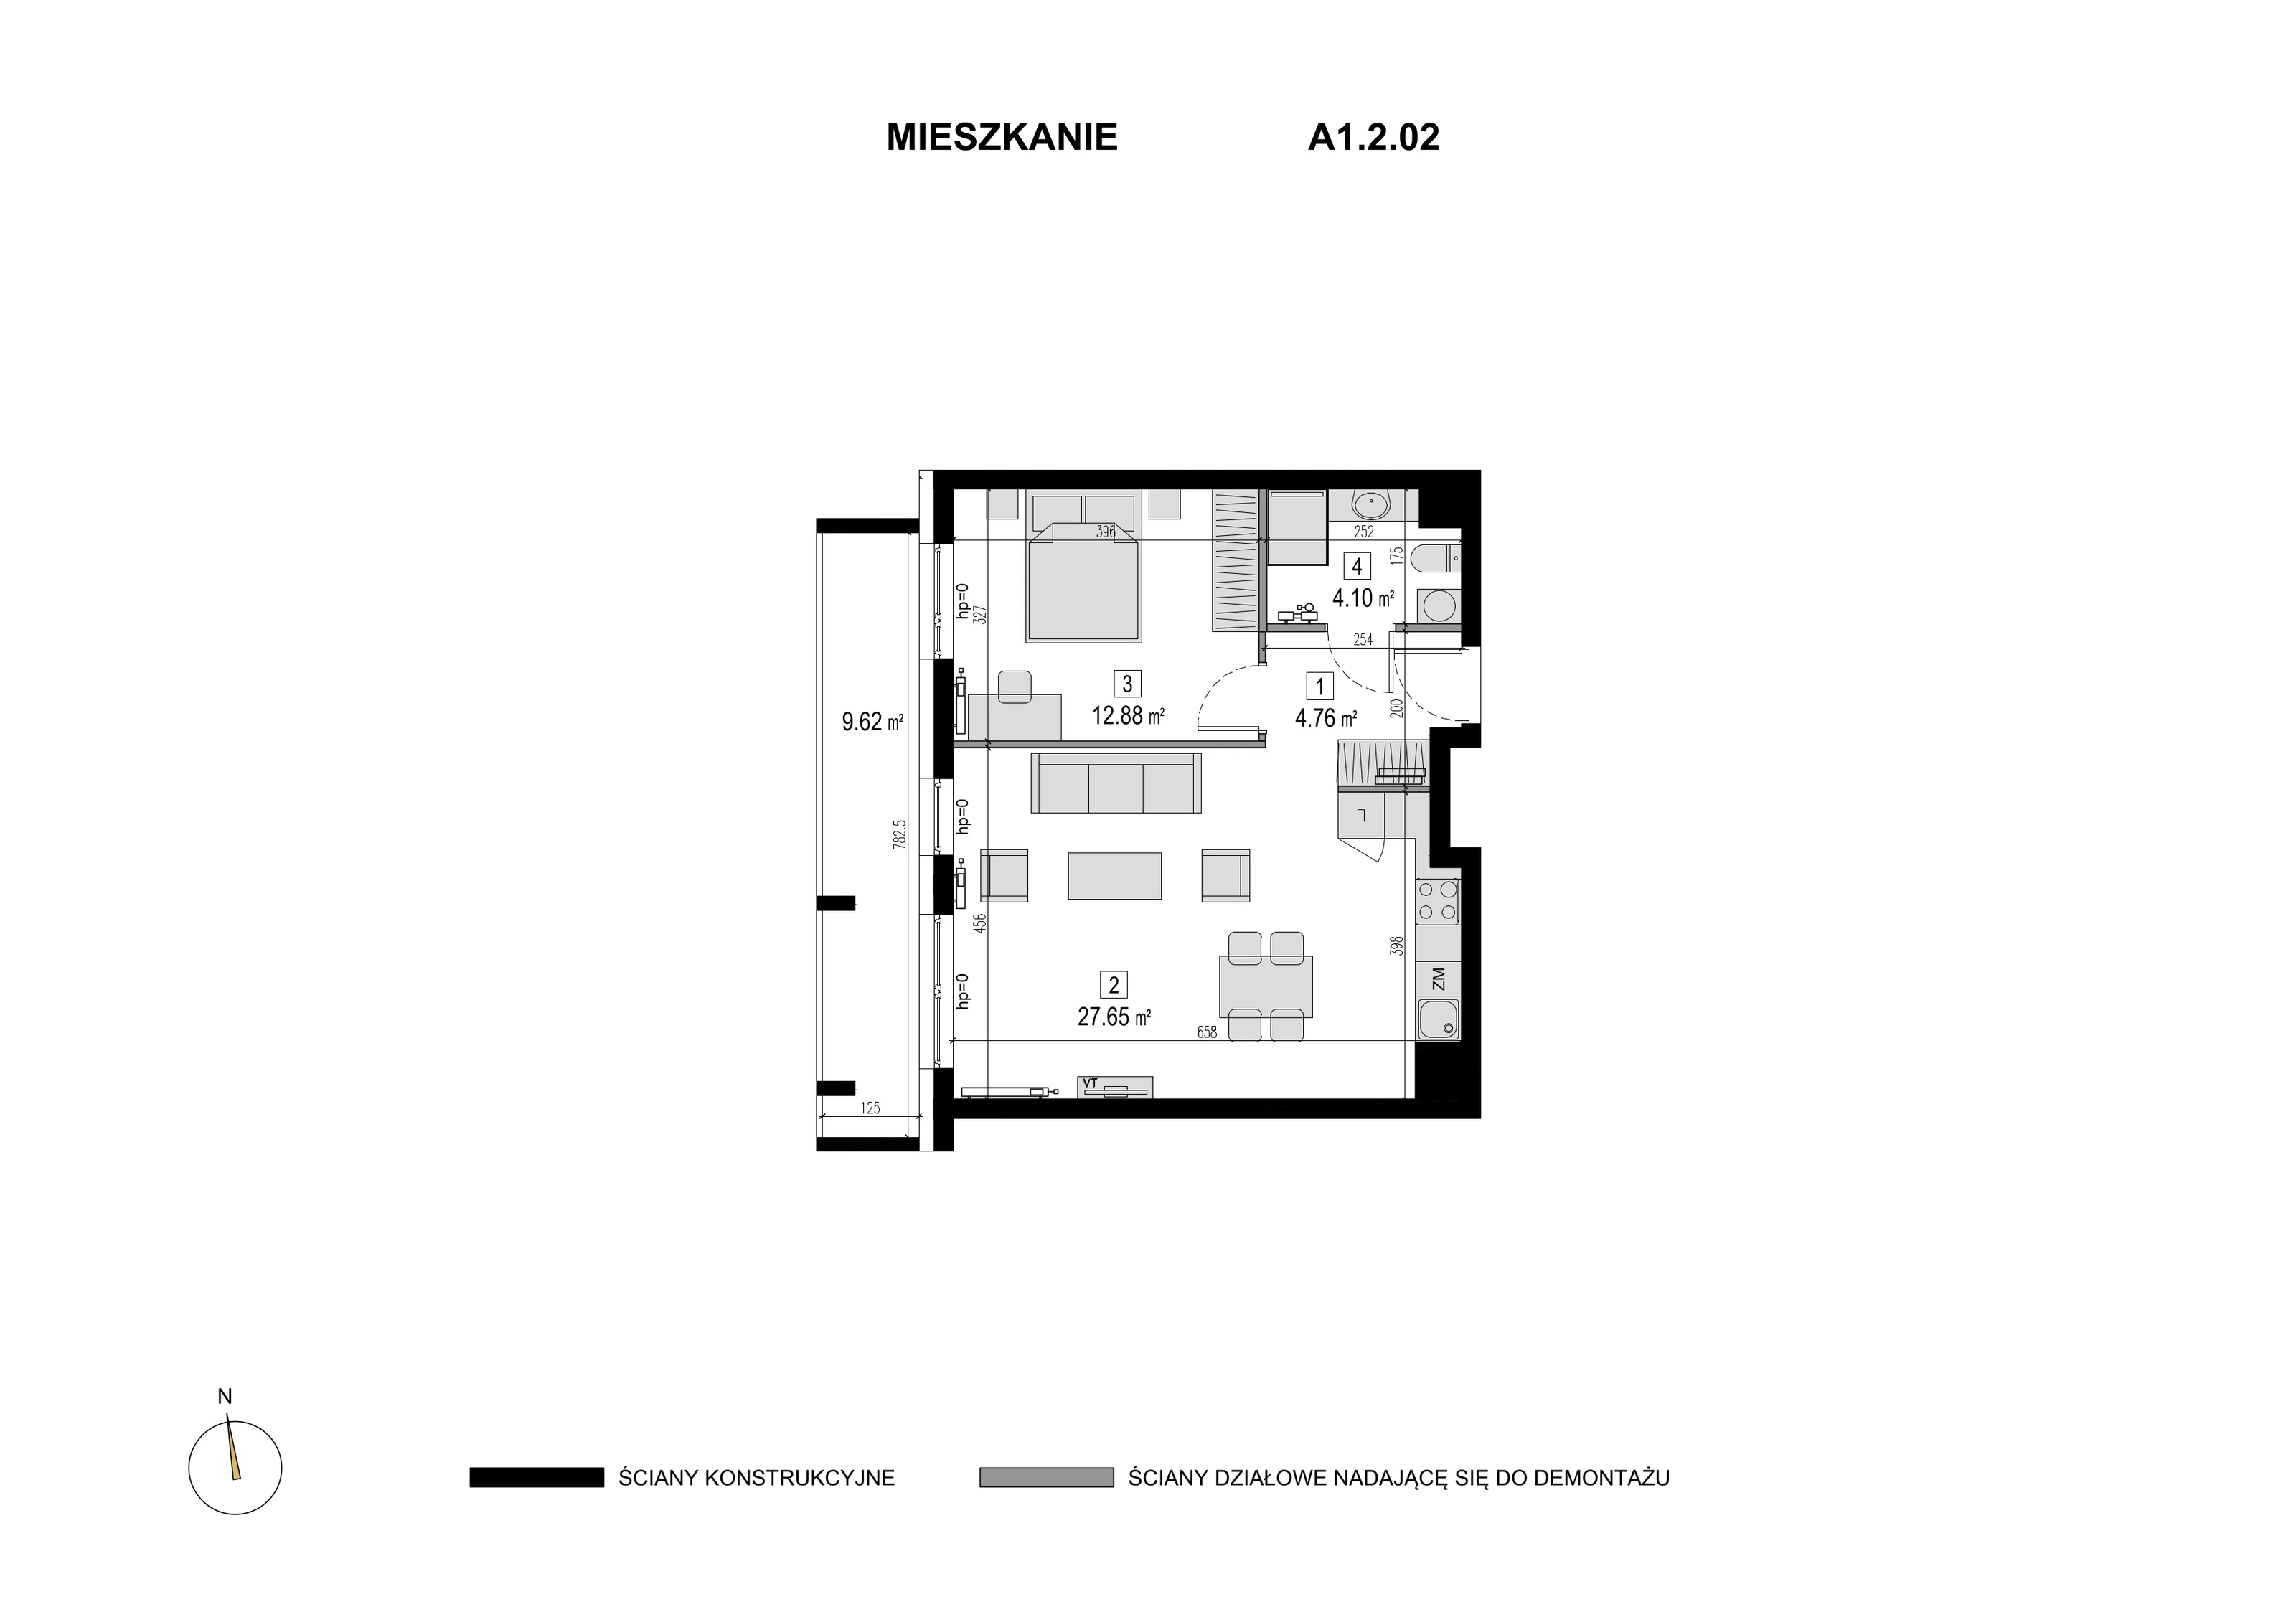 Mieszkanie 49,39 m², piętro 1, oferta nr A1.2.02, Novaforma, Legnica, ul. Chojnowska